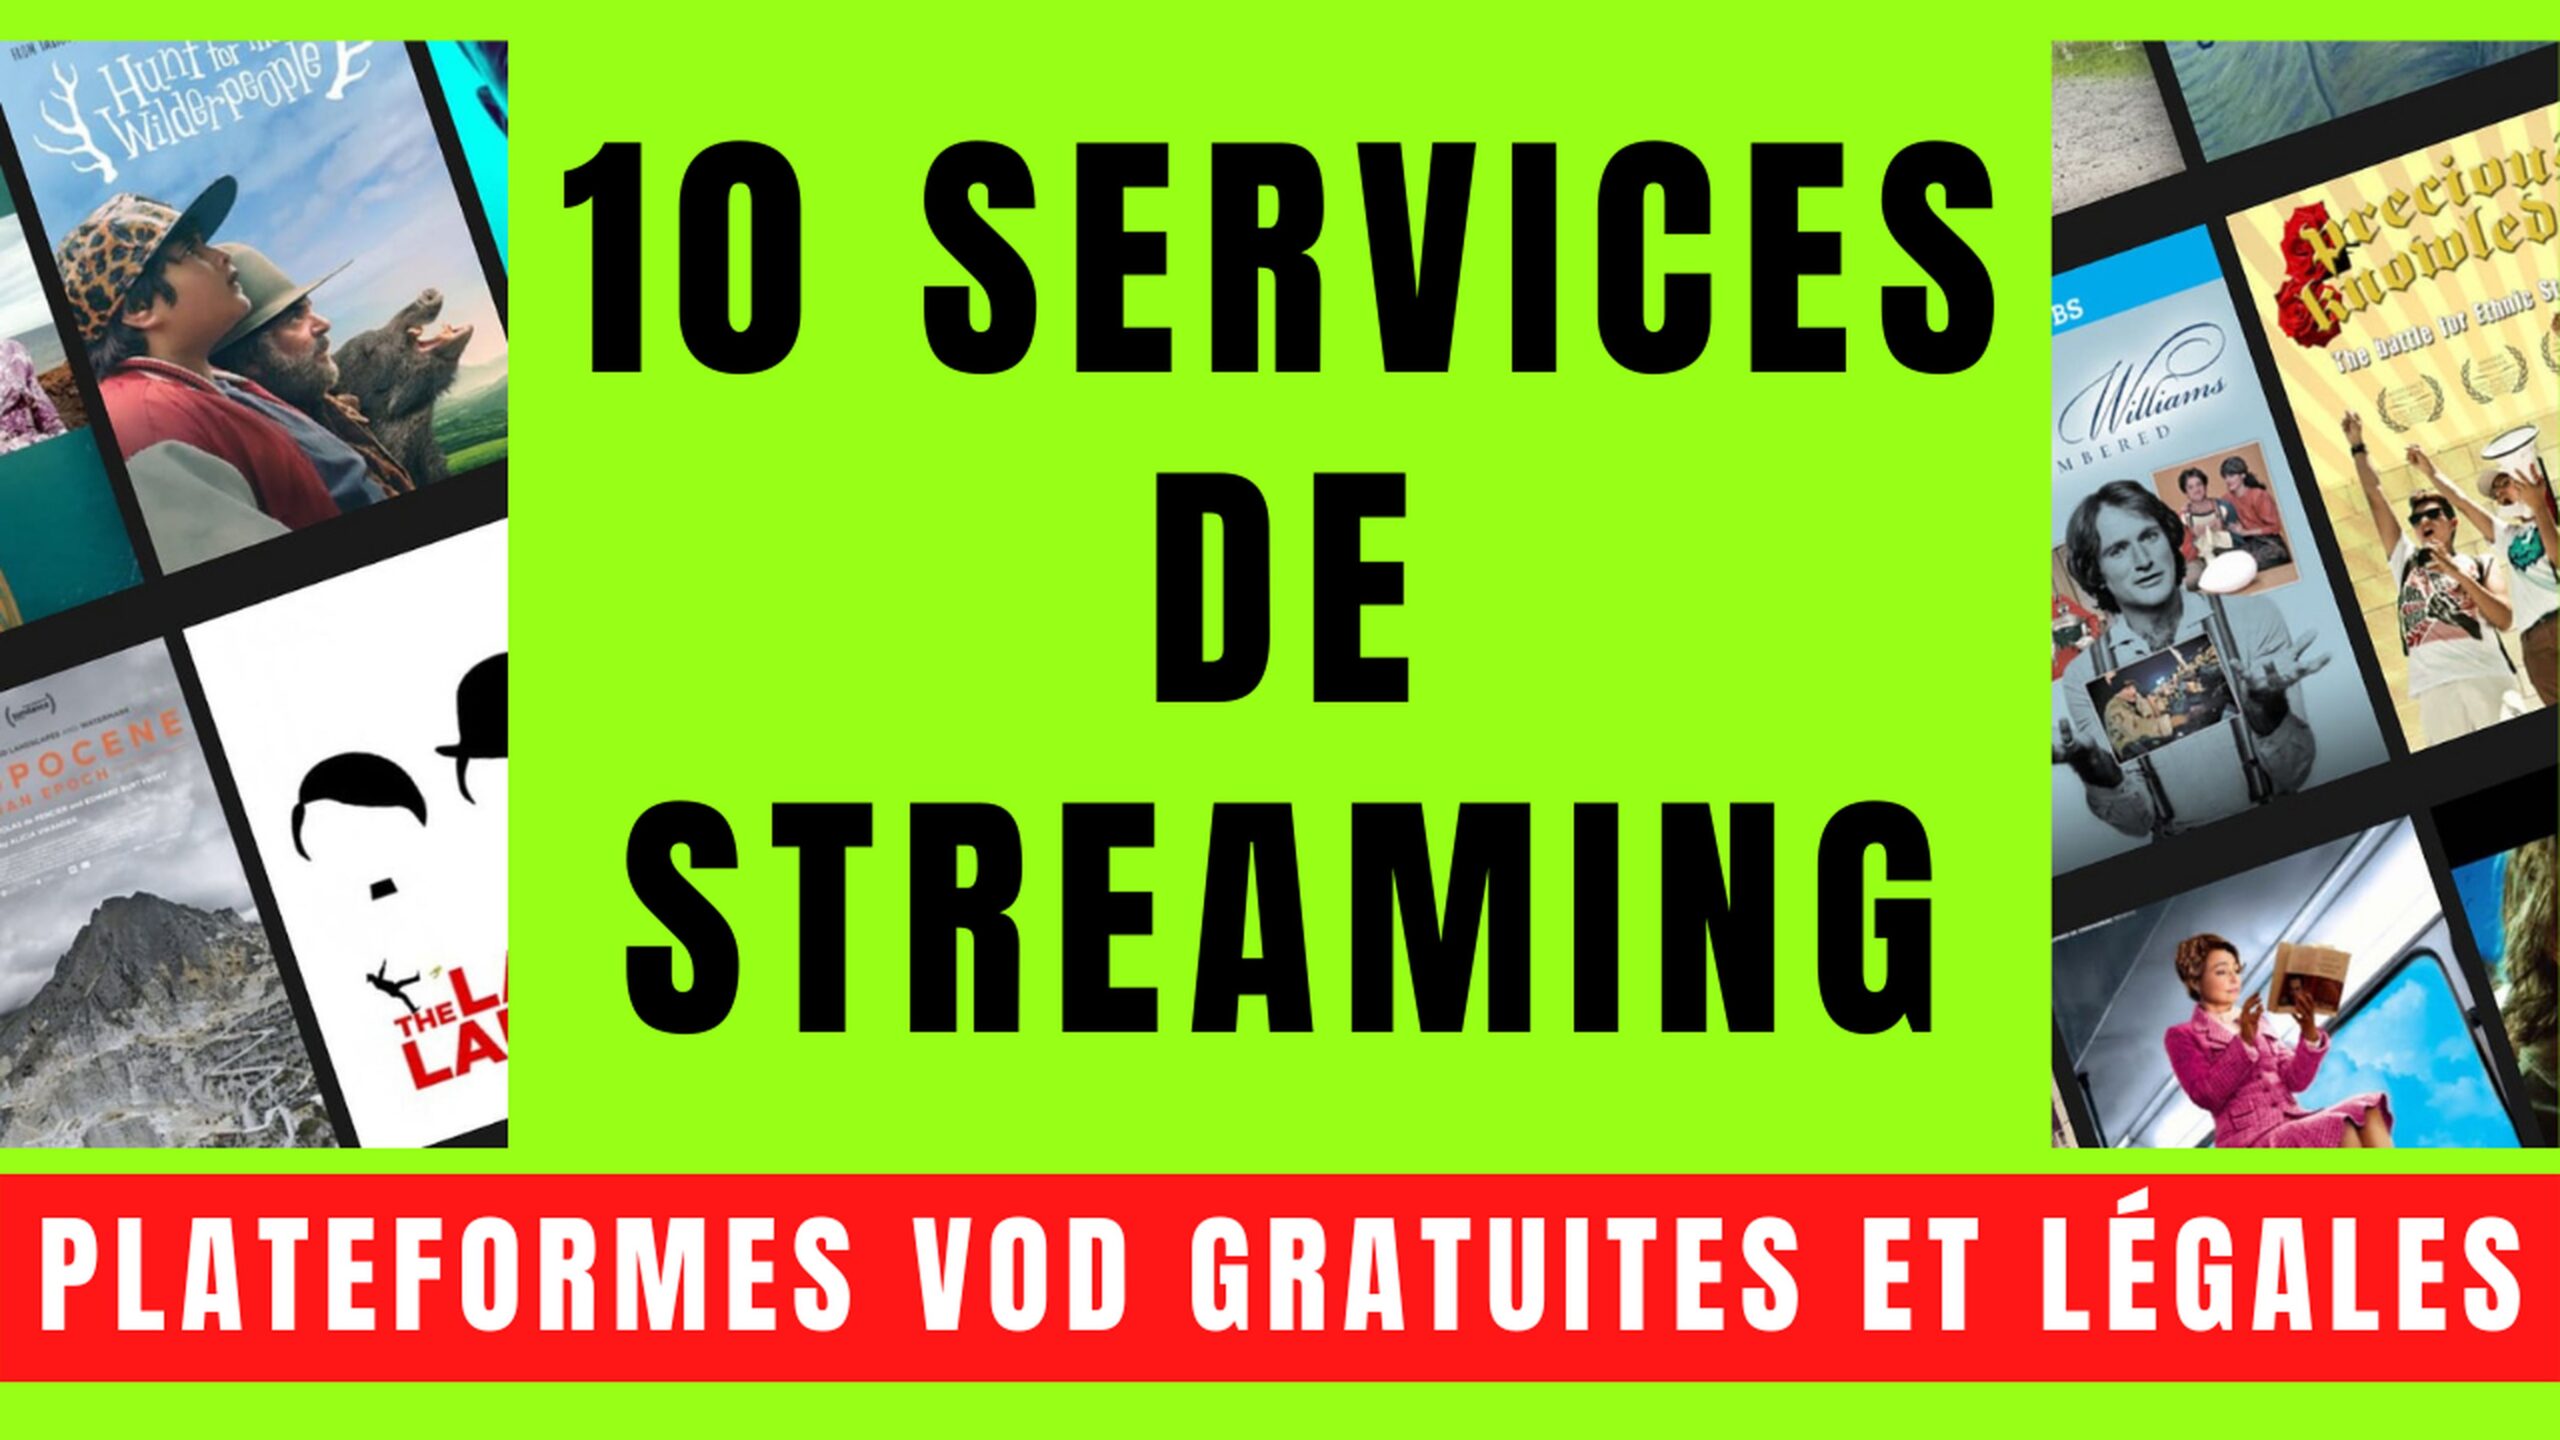 10 SERVICES VOD avec STREAMING GRATUIT et LÉGAL 3